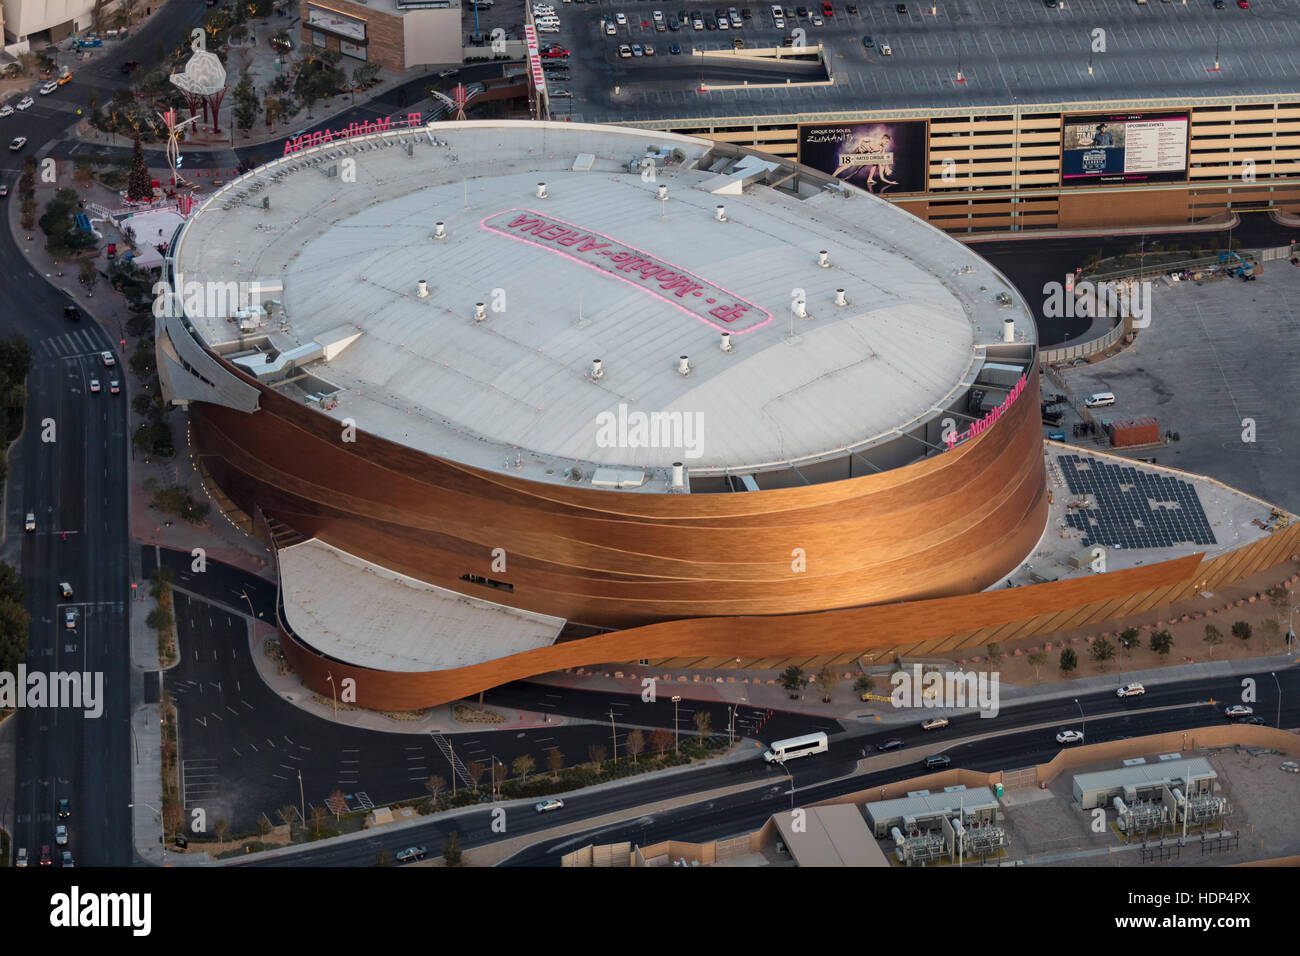 2,416 Las Vegas T Mobile Arena Images, Stock Photos & Vectors